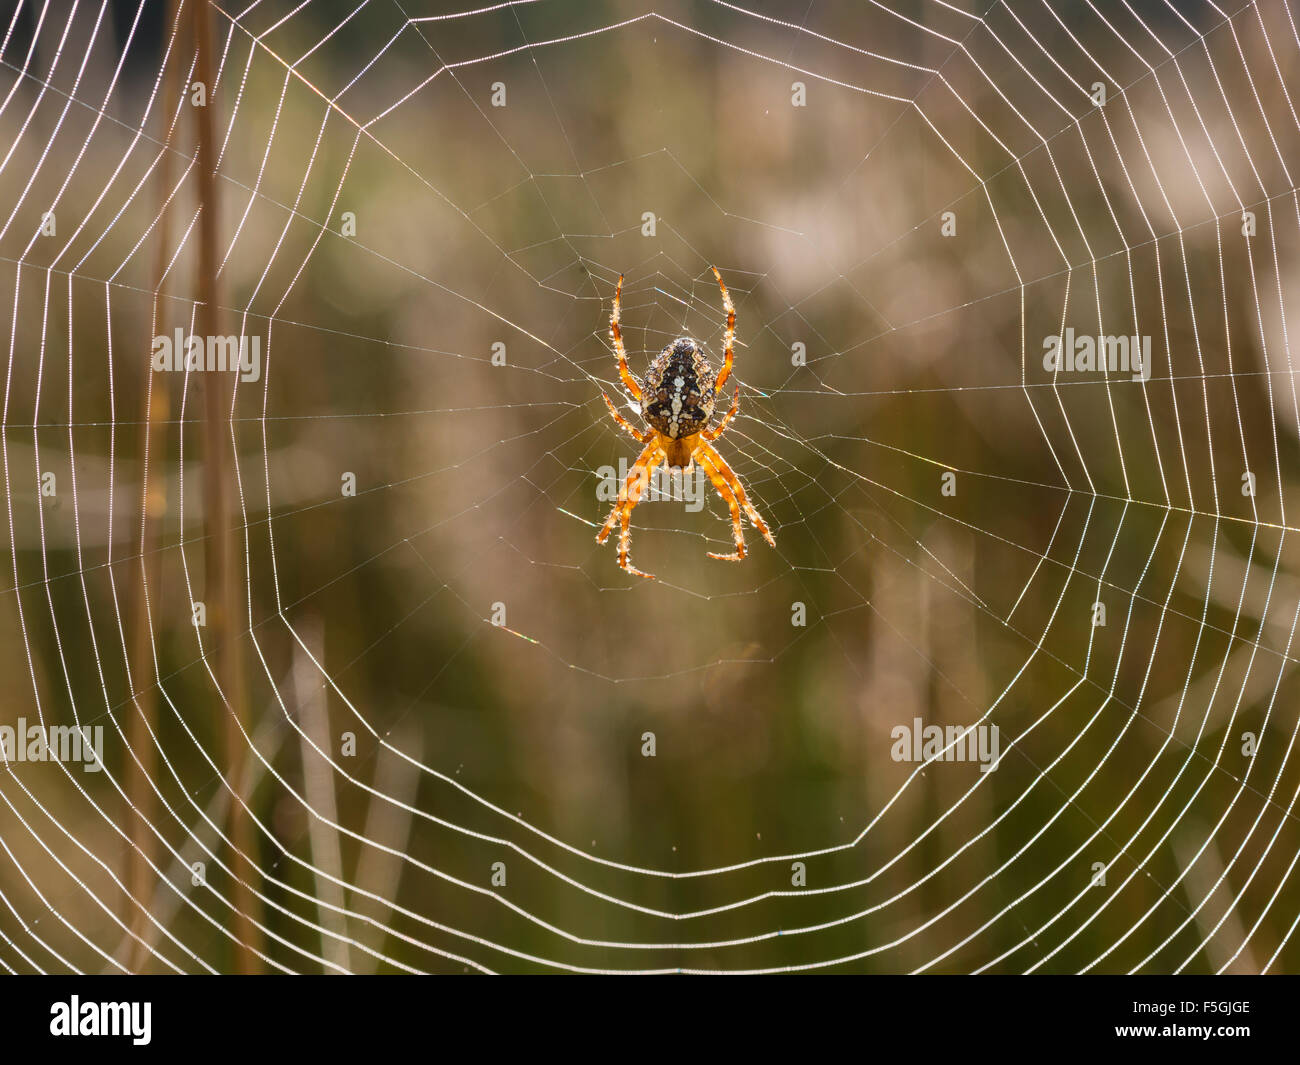 European garden spider (Araneus diadematus), Denmark Stock Photo